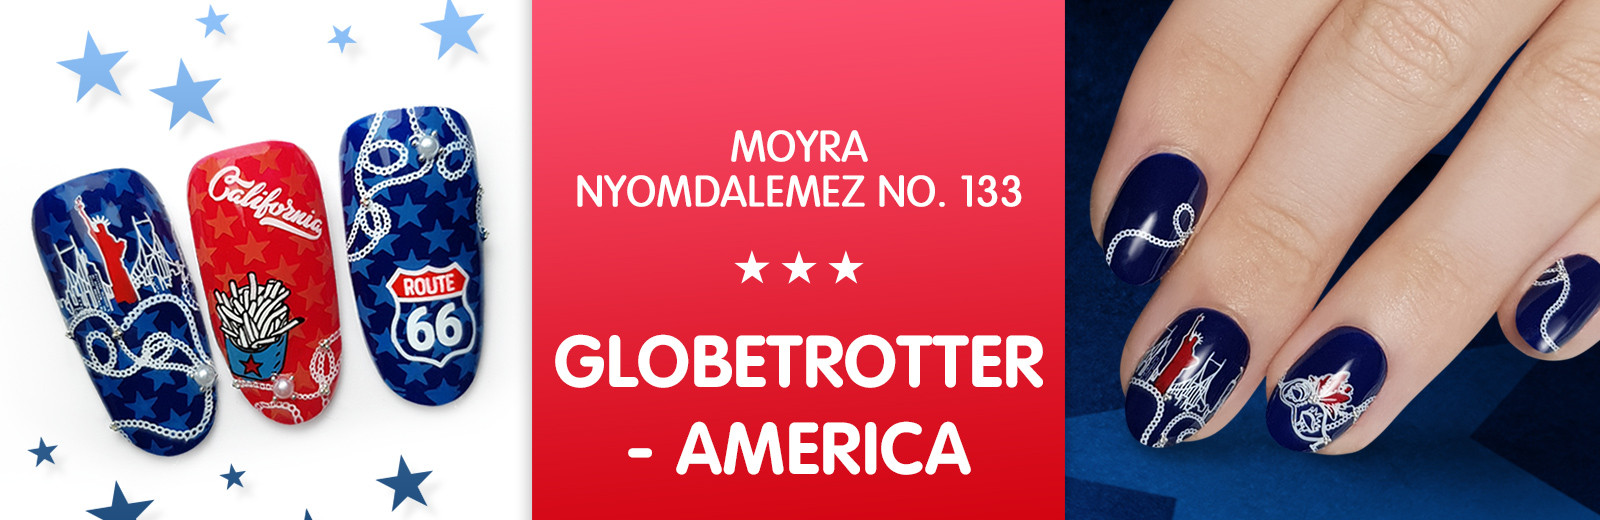 Moyra nyomdalemez 133 Globetrotter-America